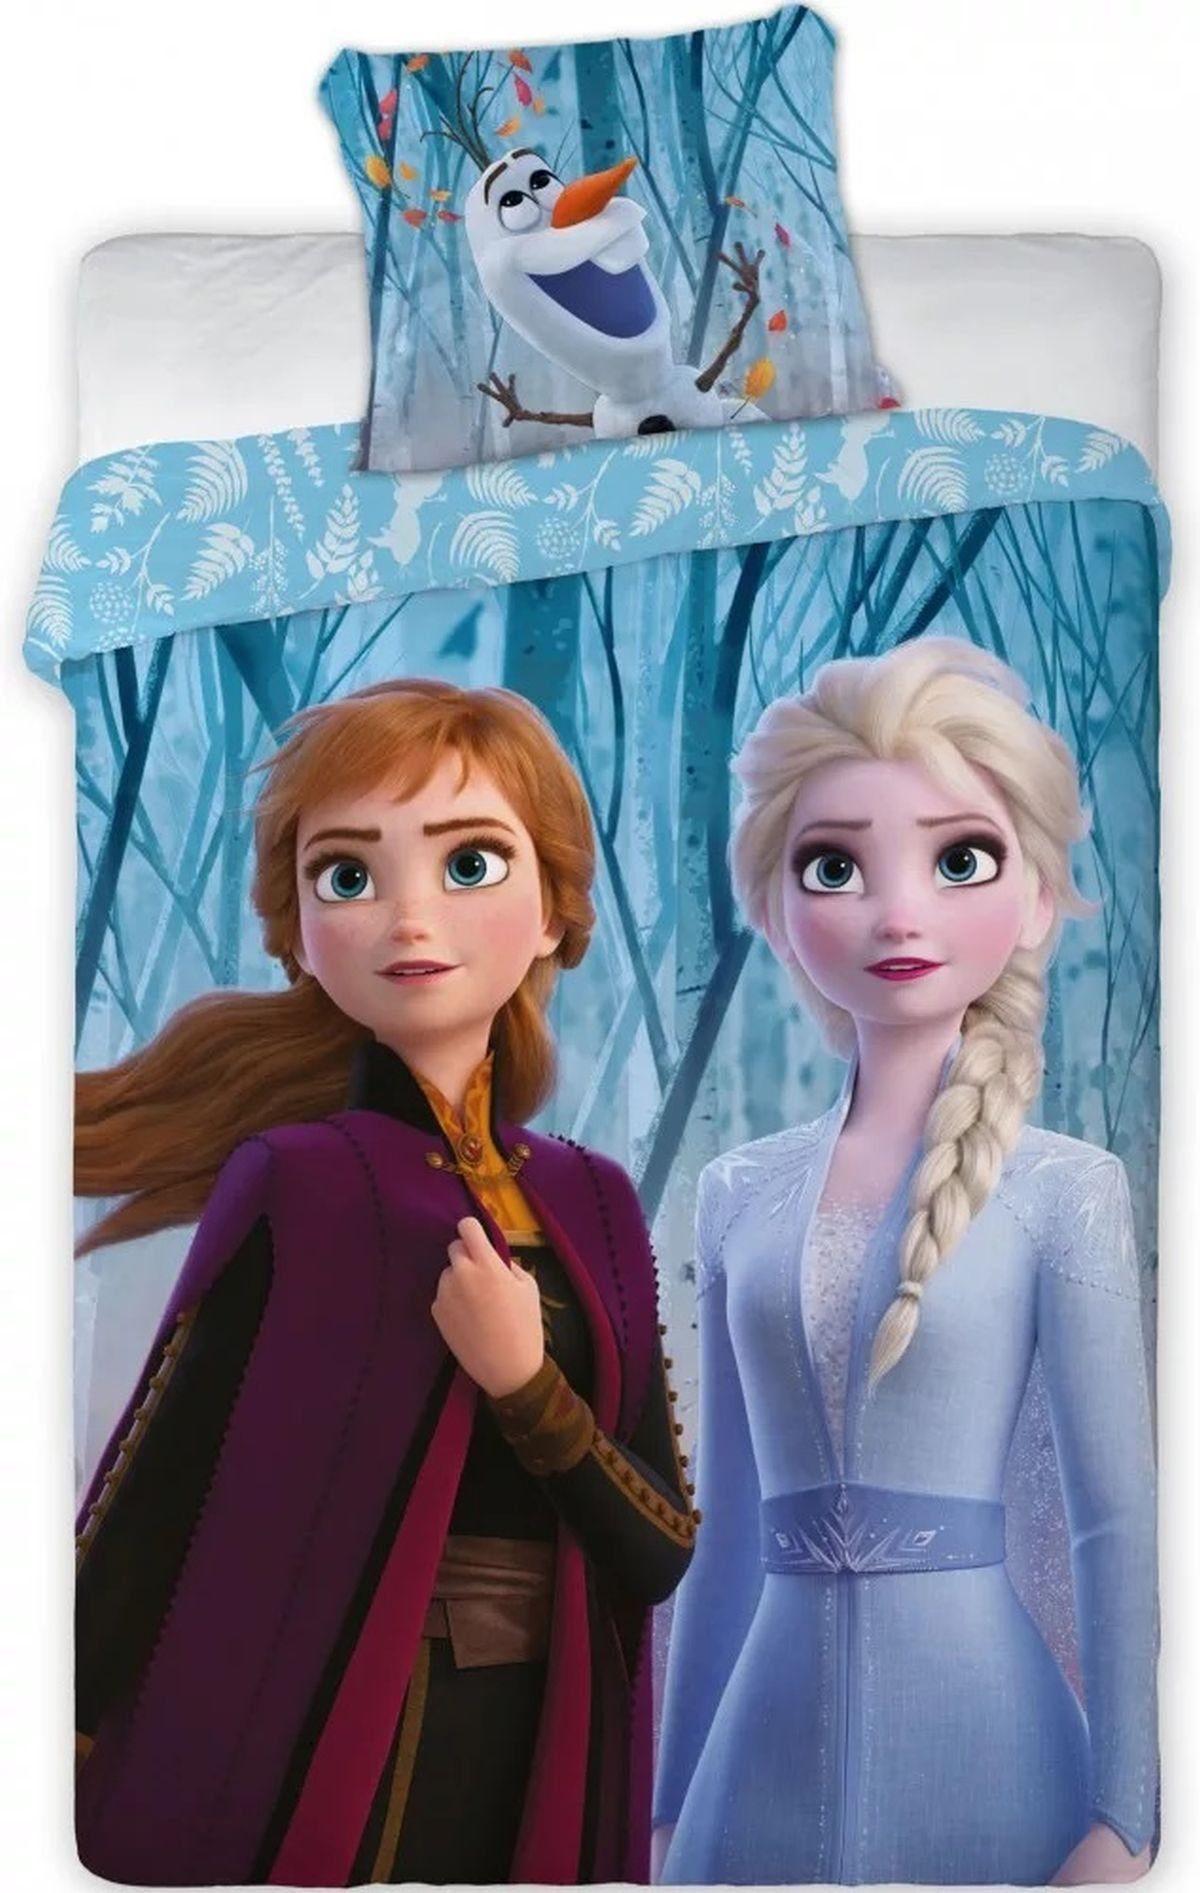 Kinderbettwäsche »Die Eiskönigin 2 Anna Elsa - Kinder Bettwäsche Set  140x200 cm Deckenbezug Frozen 745«, Disney Frozen, Baumwolle, 2 teilig